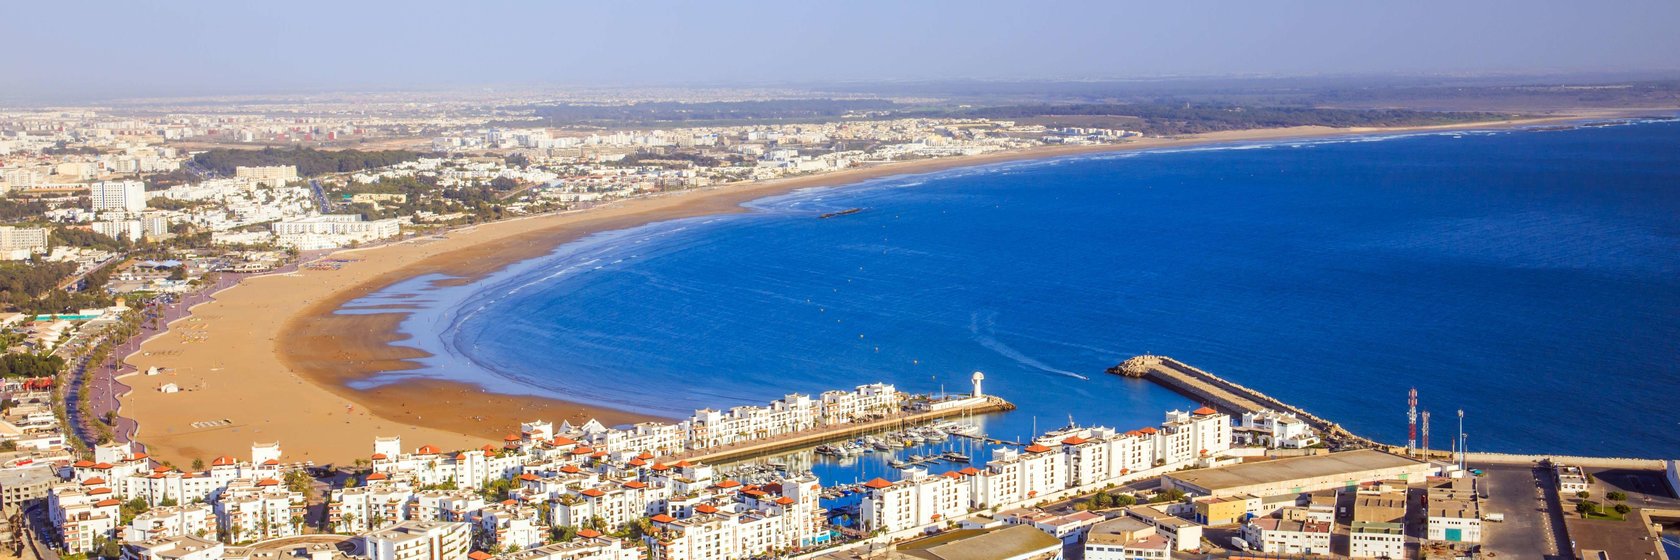 Dovolená Maroko - Atlantické pobřeží